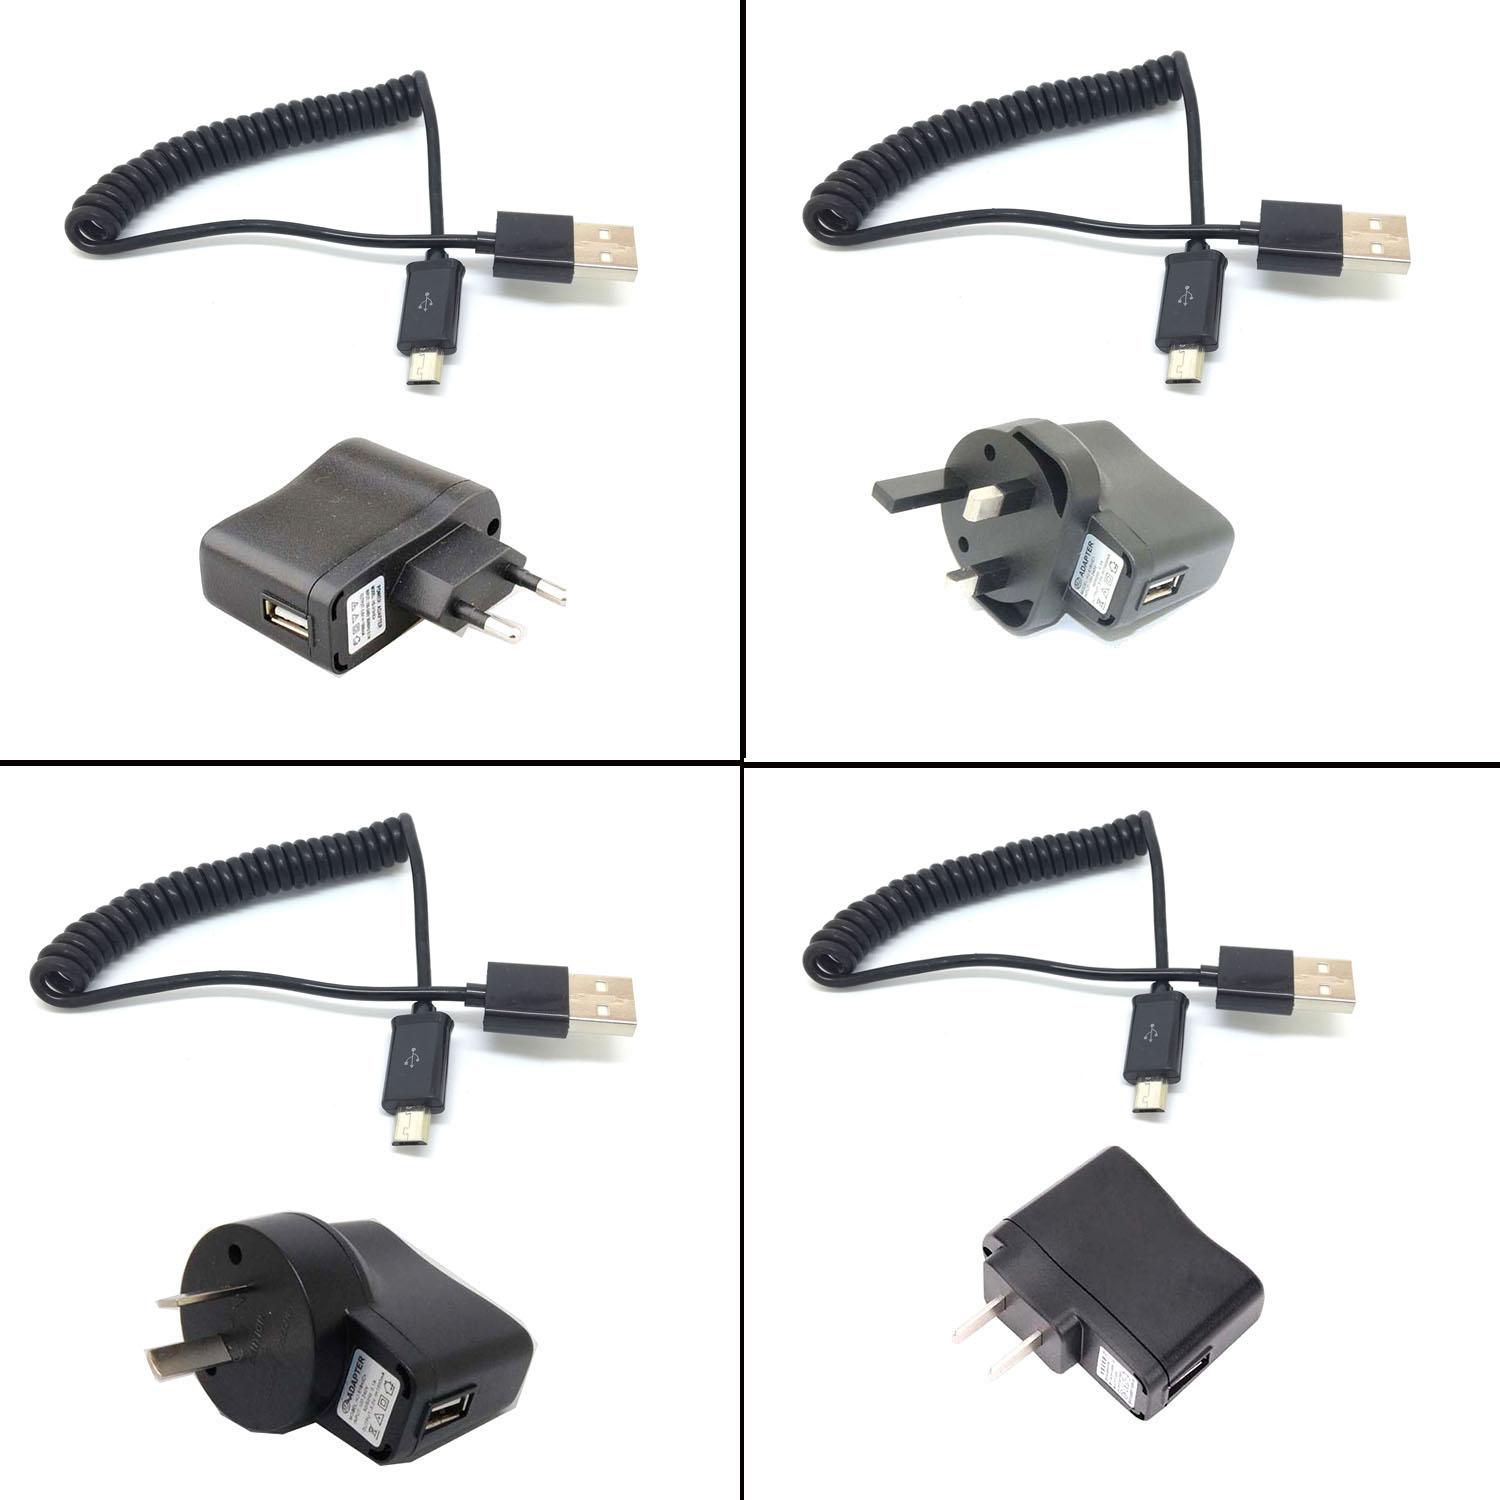 Изображение товара: Сетевое зарядное устройство 3 фута 1 м пружинный спиральный USB штекер к Micro USB 5-контактный адаптер кабель шнур новый для телефона планшета